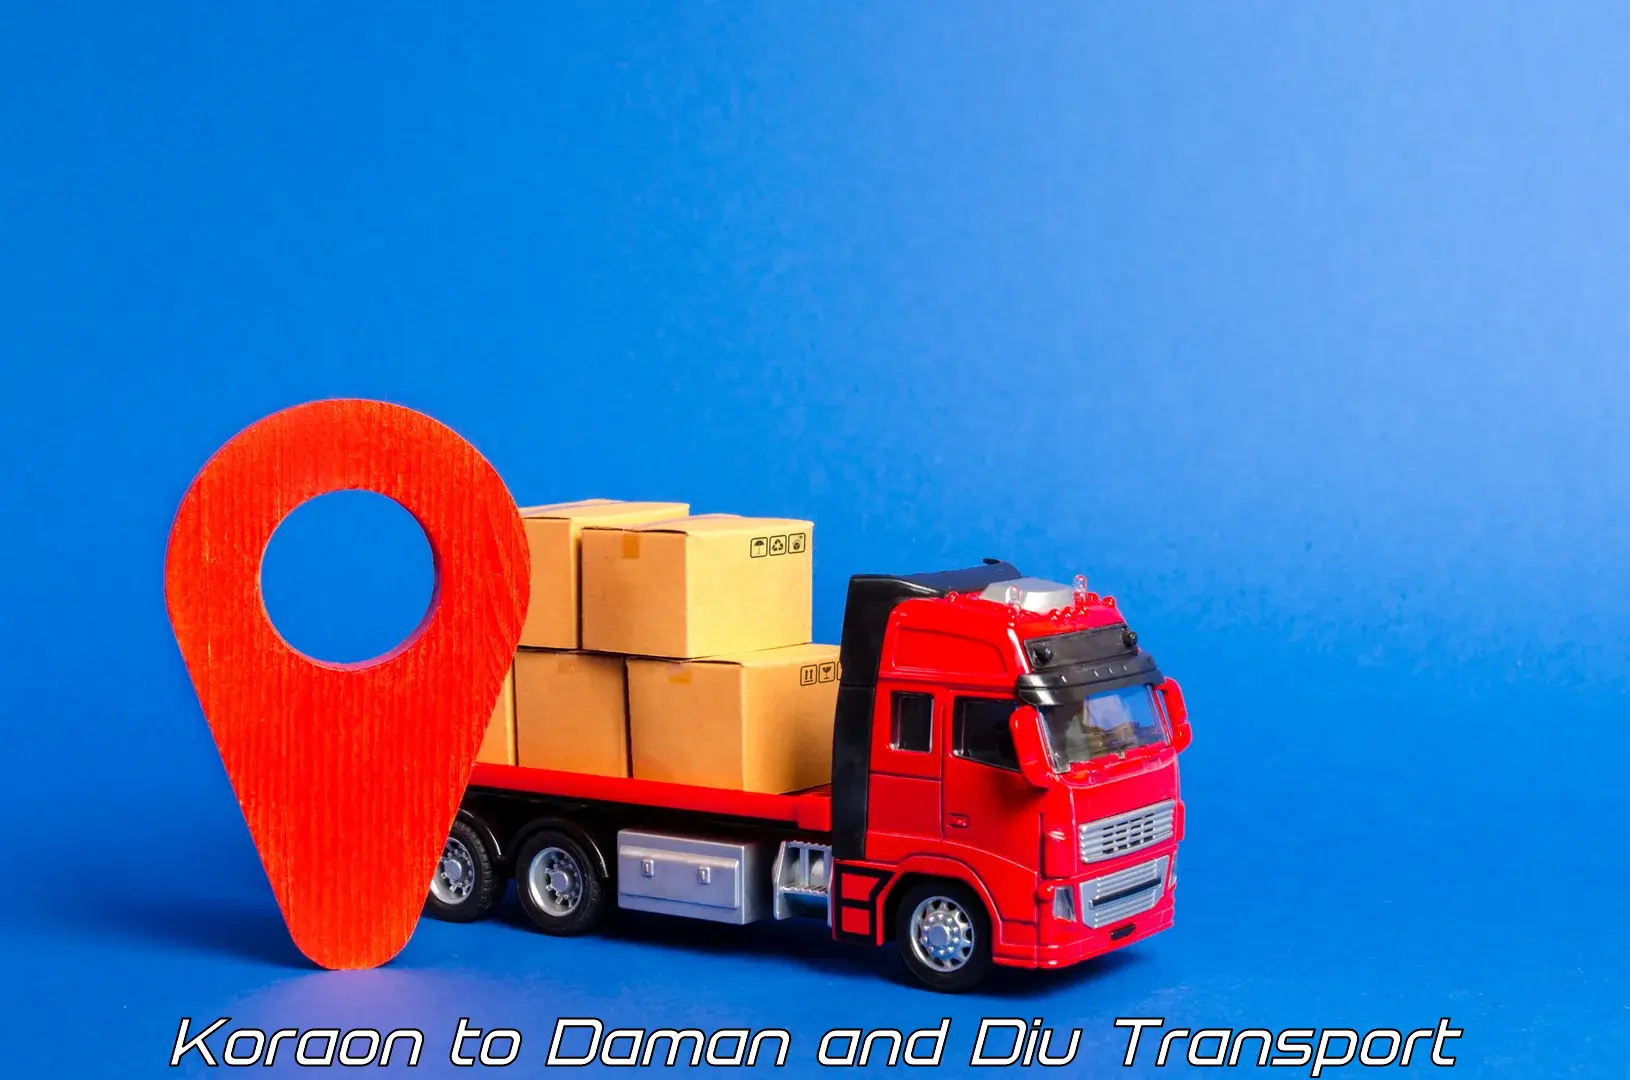 Pick up transport service Koraon to Daman and Diu